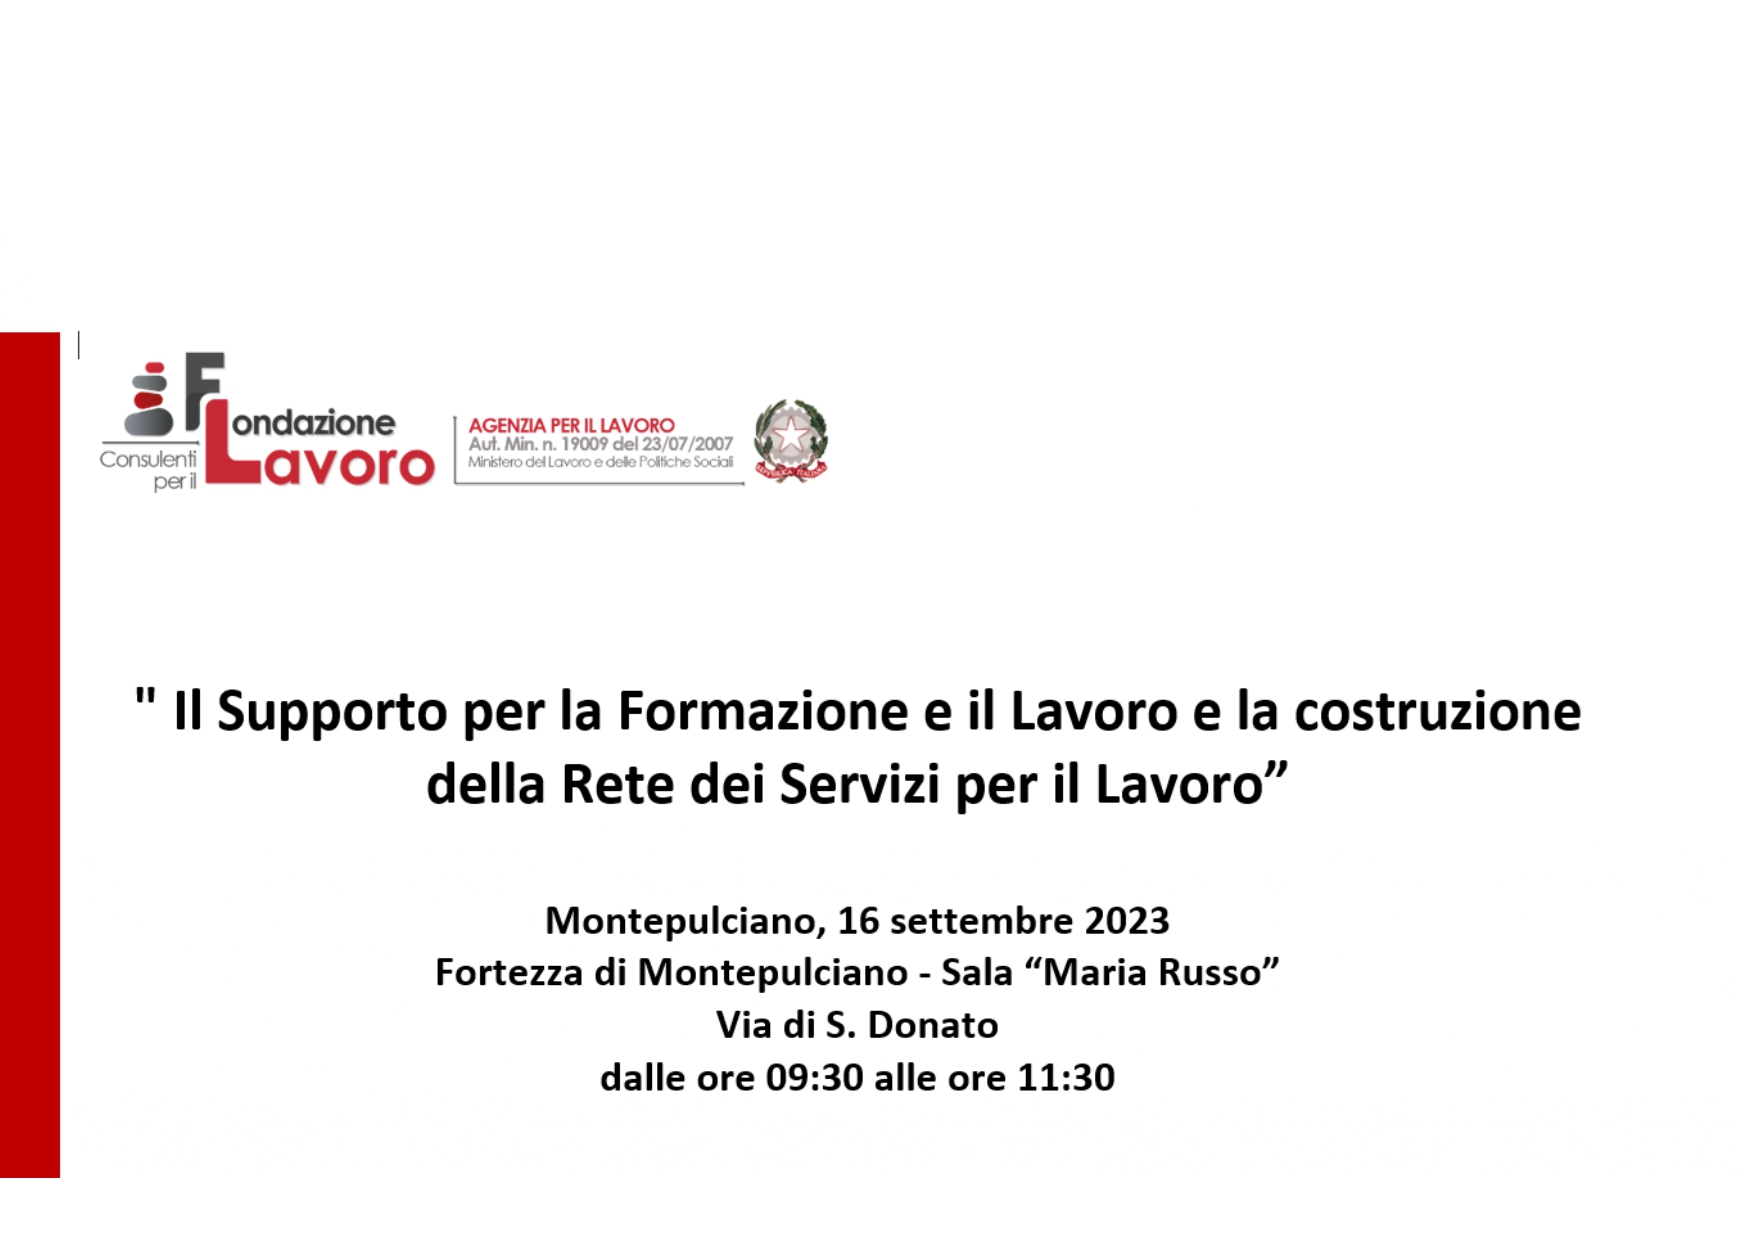 Seminario: "Il Supporto per la Formazione e il Lavoro e la costruzione della Rete dei Servizi per il Lavoro” Montepulciano 16 settembre 2023 ore 09:30 - 11:30